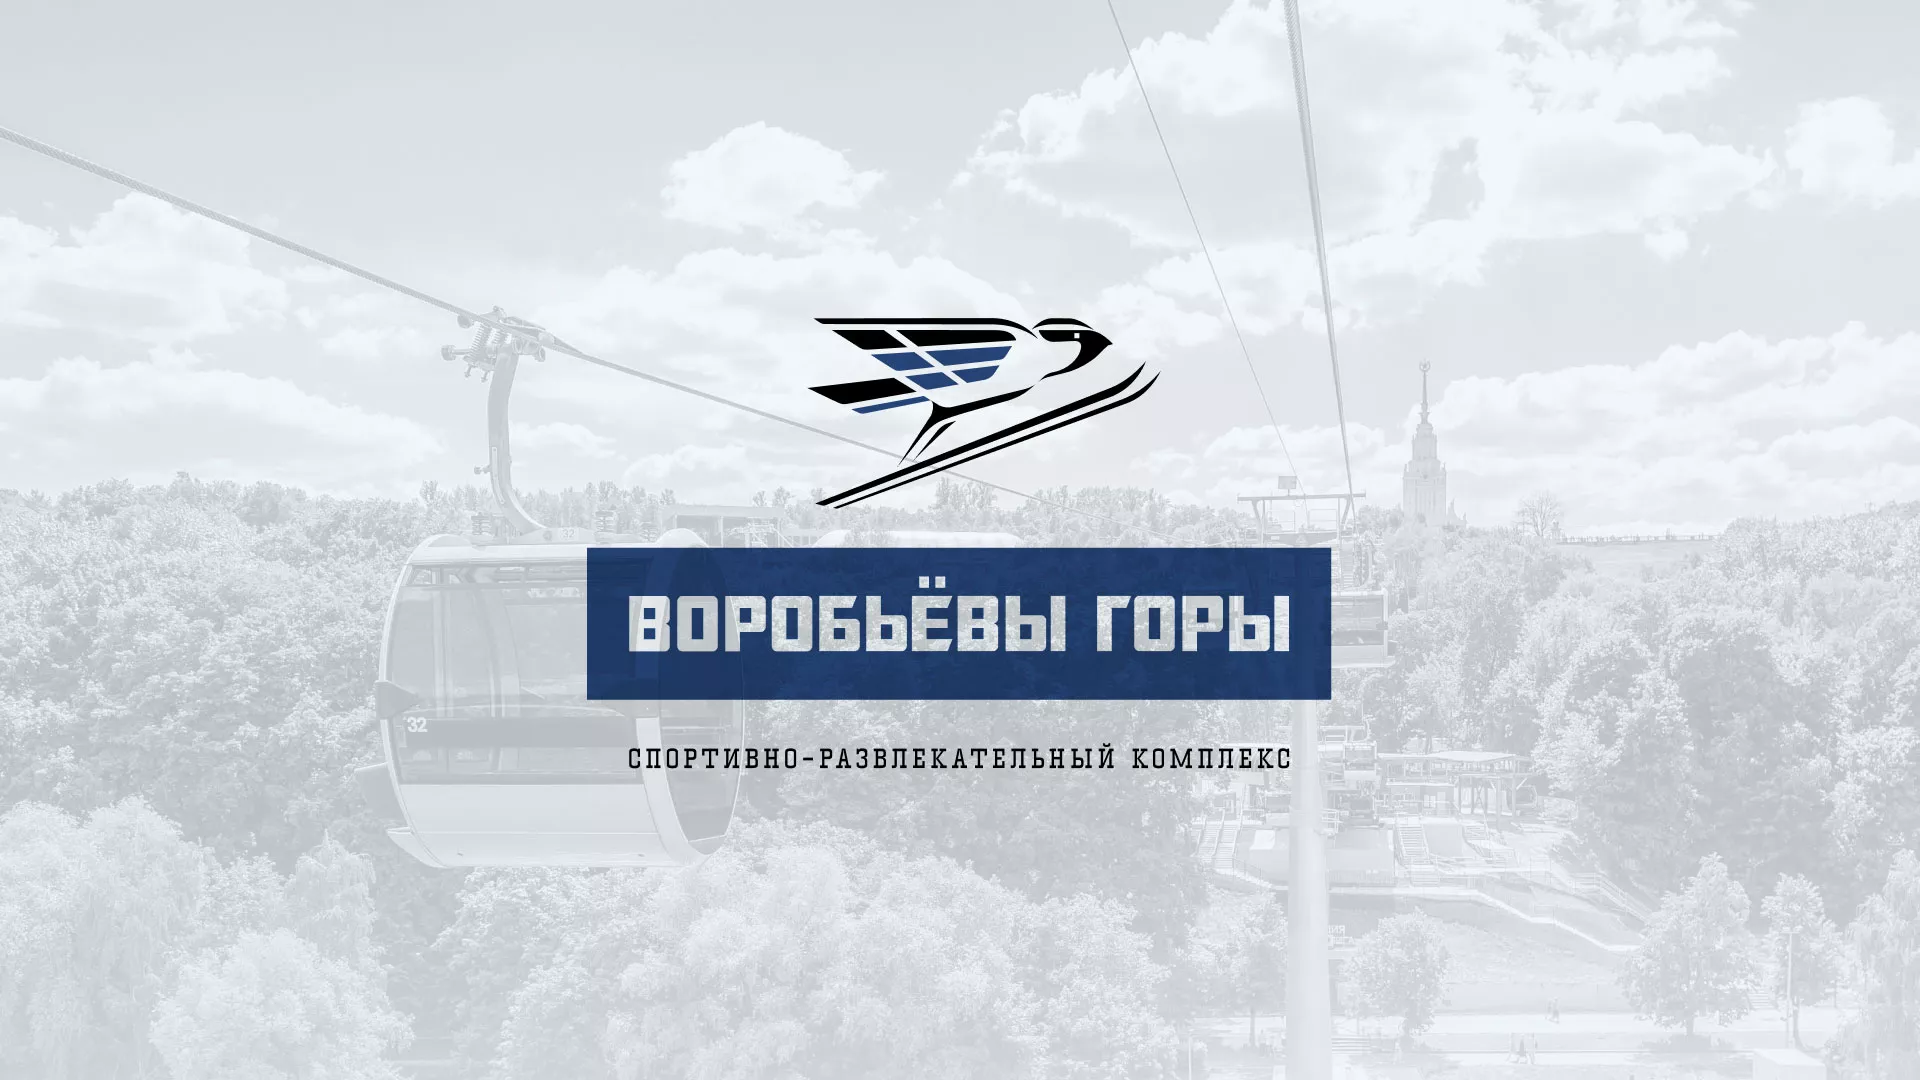 Разработка сайта в Щелково для спортивно-развлекательного комплекса «Воробьёвы горы»